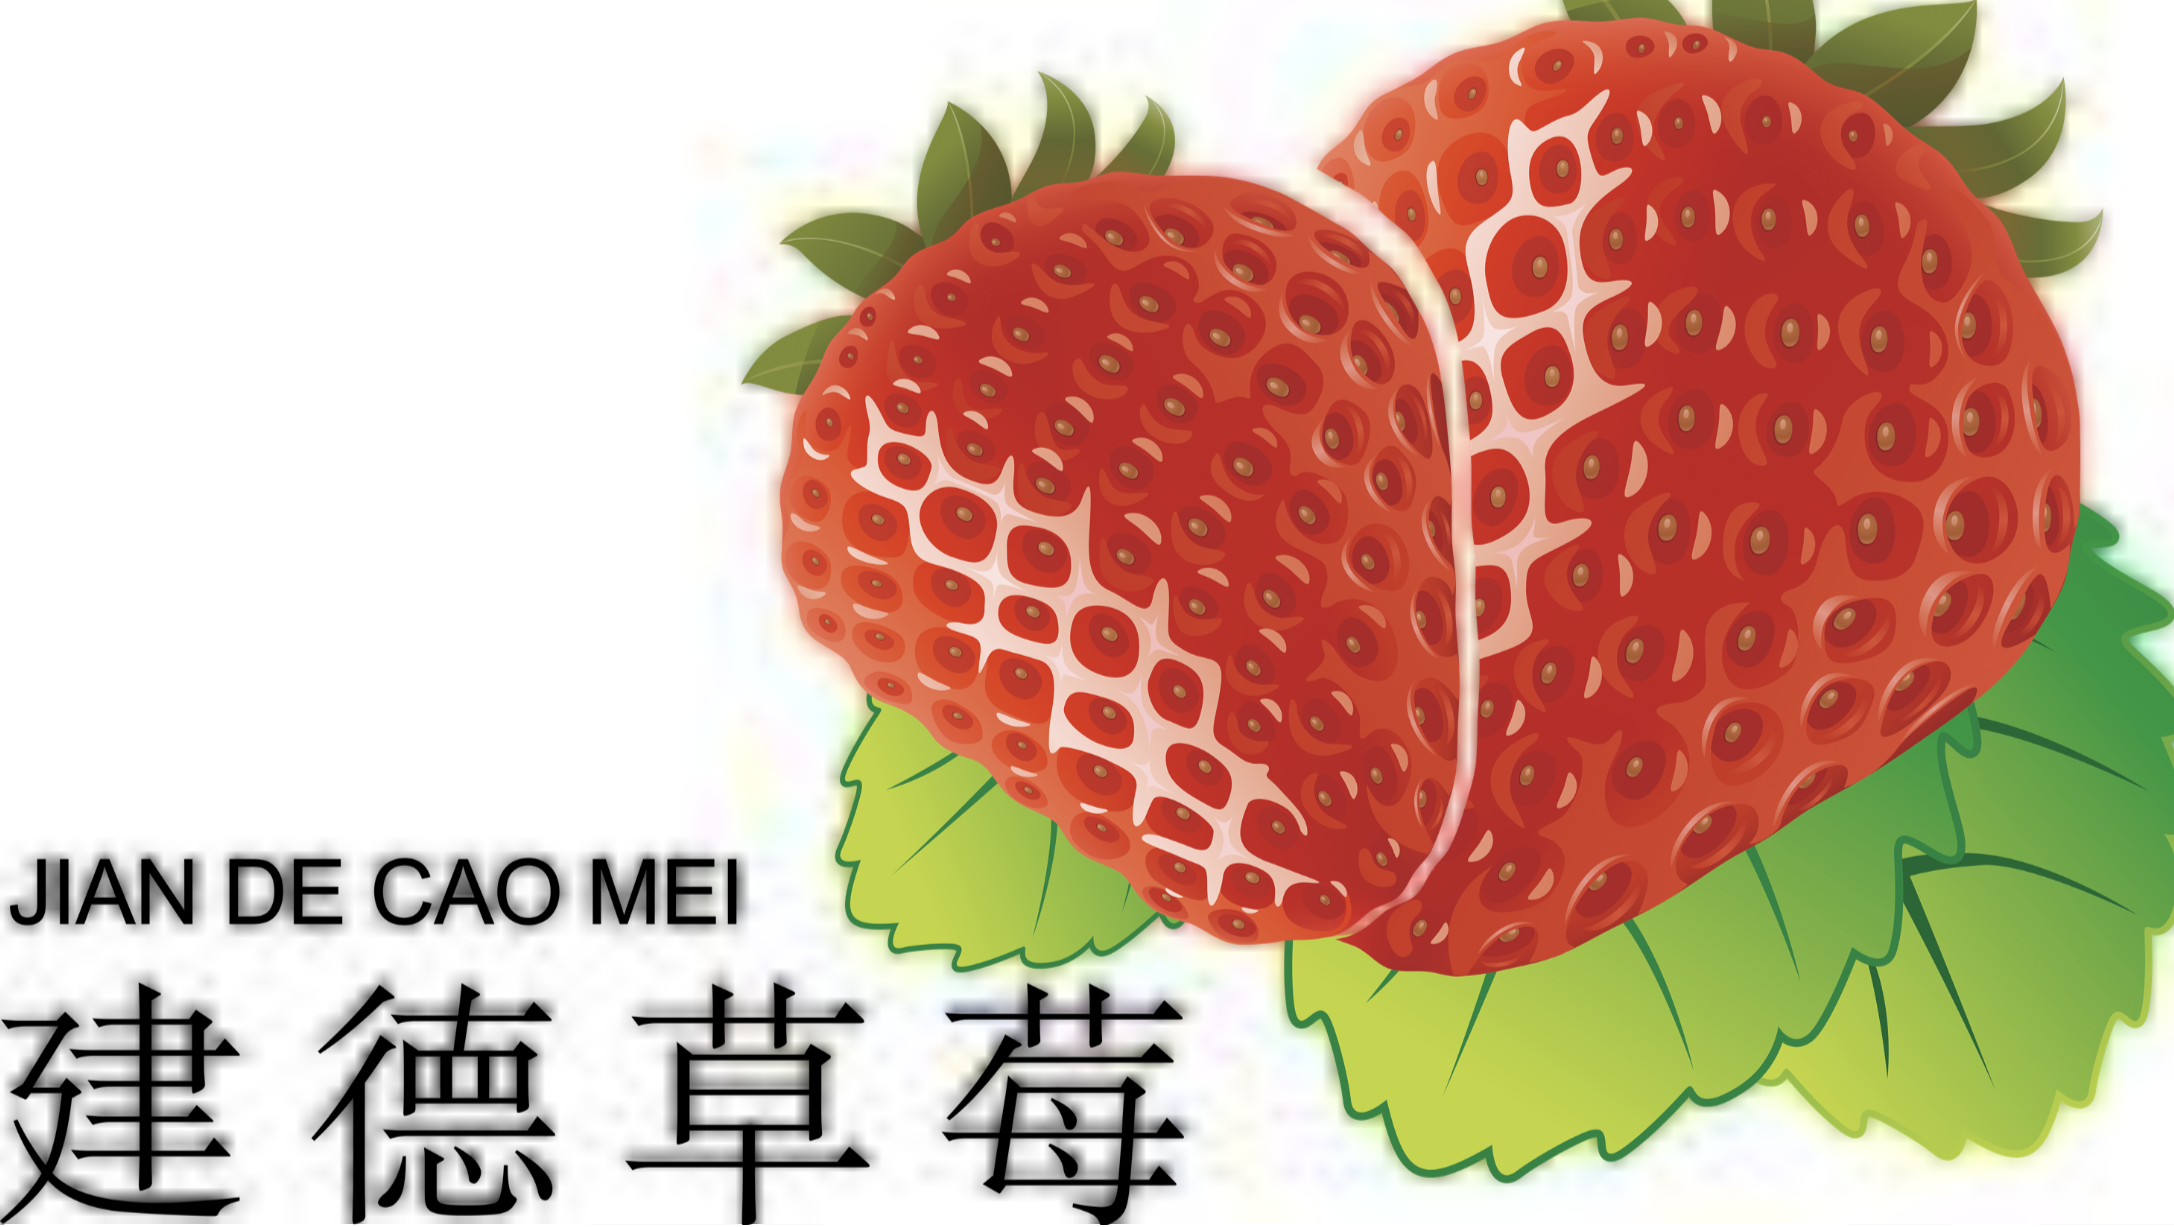 安慕希丹东草莓减糖版全新上市 | Foodaily每日食品